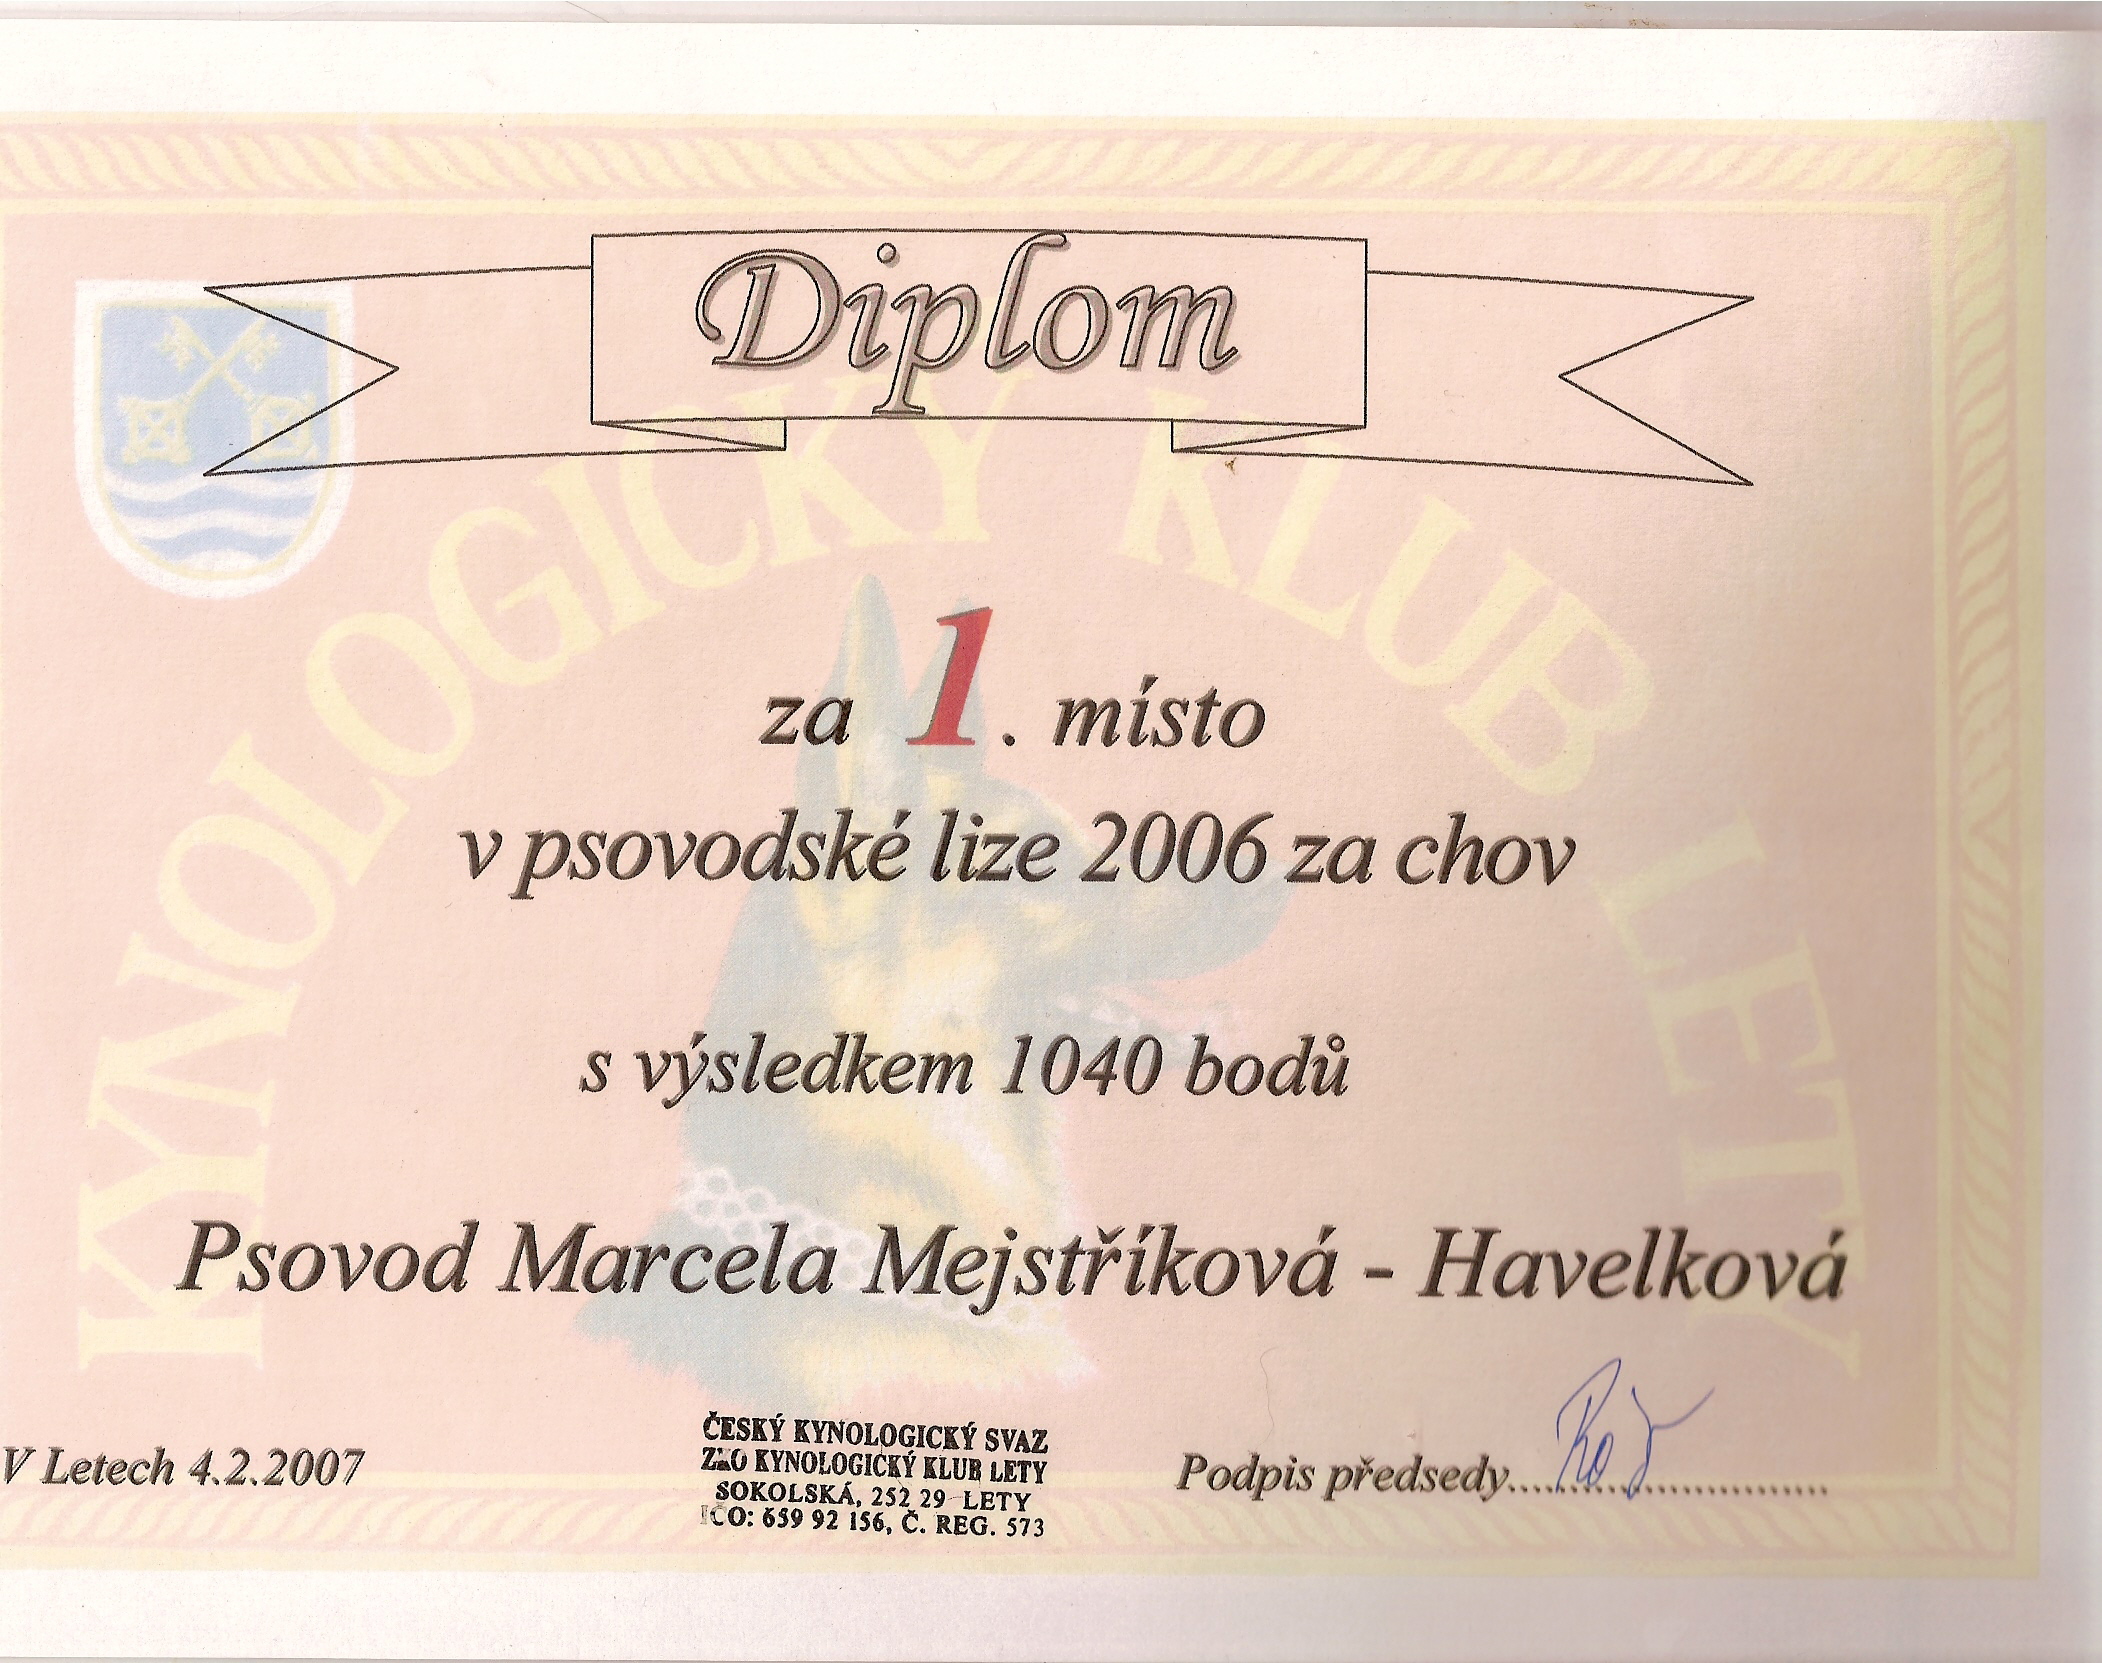 Psovodská liga 2006-chov.jpg